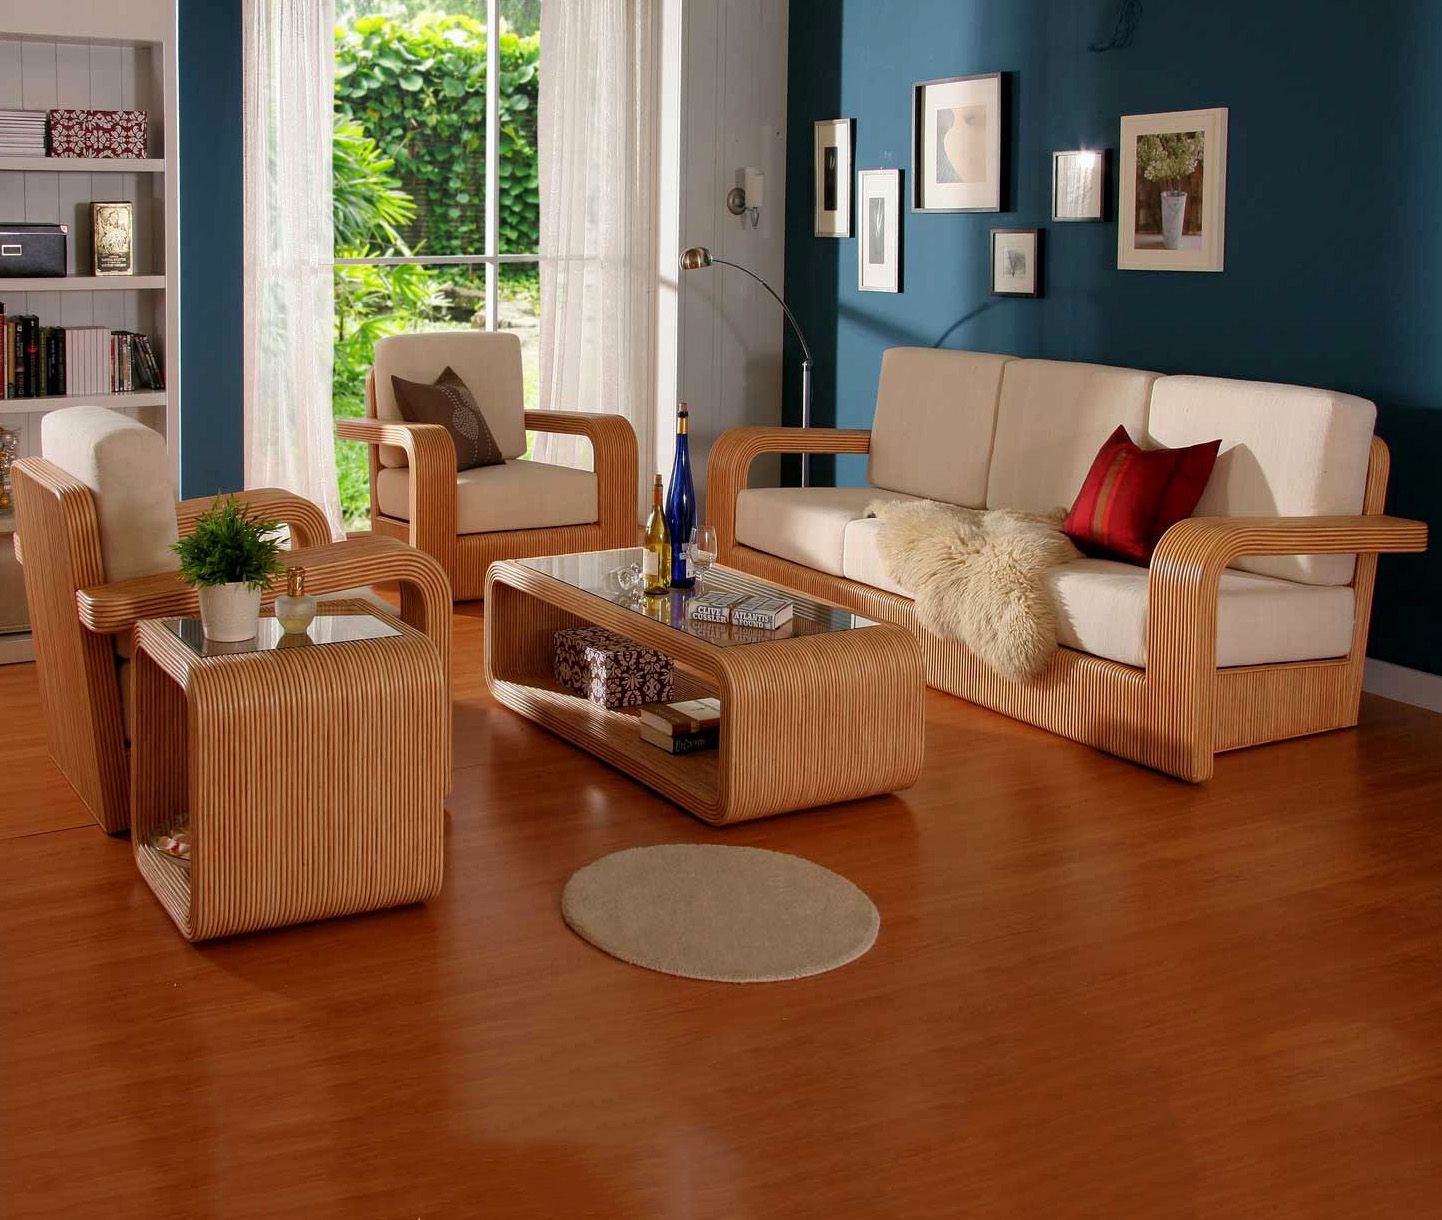 Với thiết kế đơn giản, bàn ghế phòng khách của chúng tôi sẽ mang đến cho bạn một không gian trang nhã và thanh lịch mà không cần phải tốn quá nhiều chi phí.